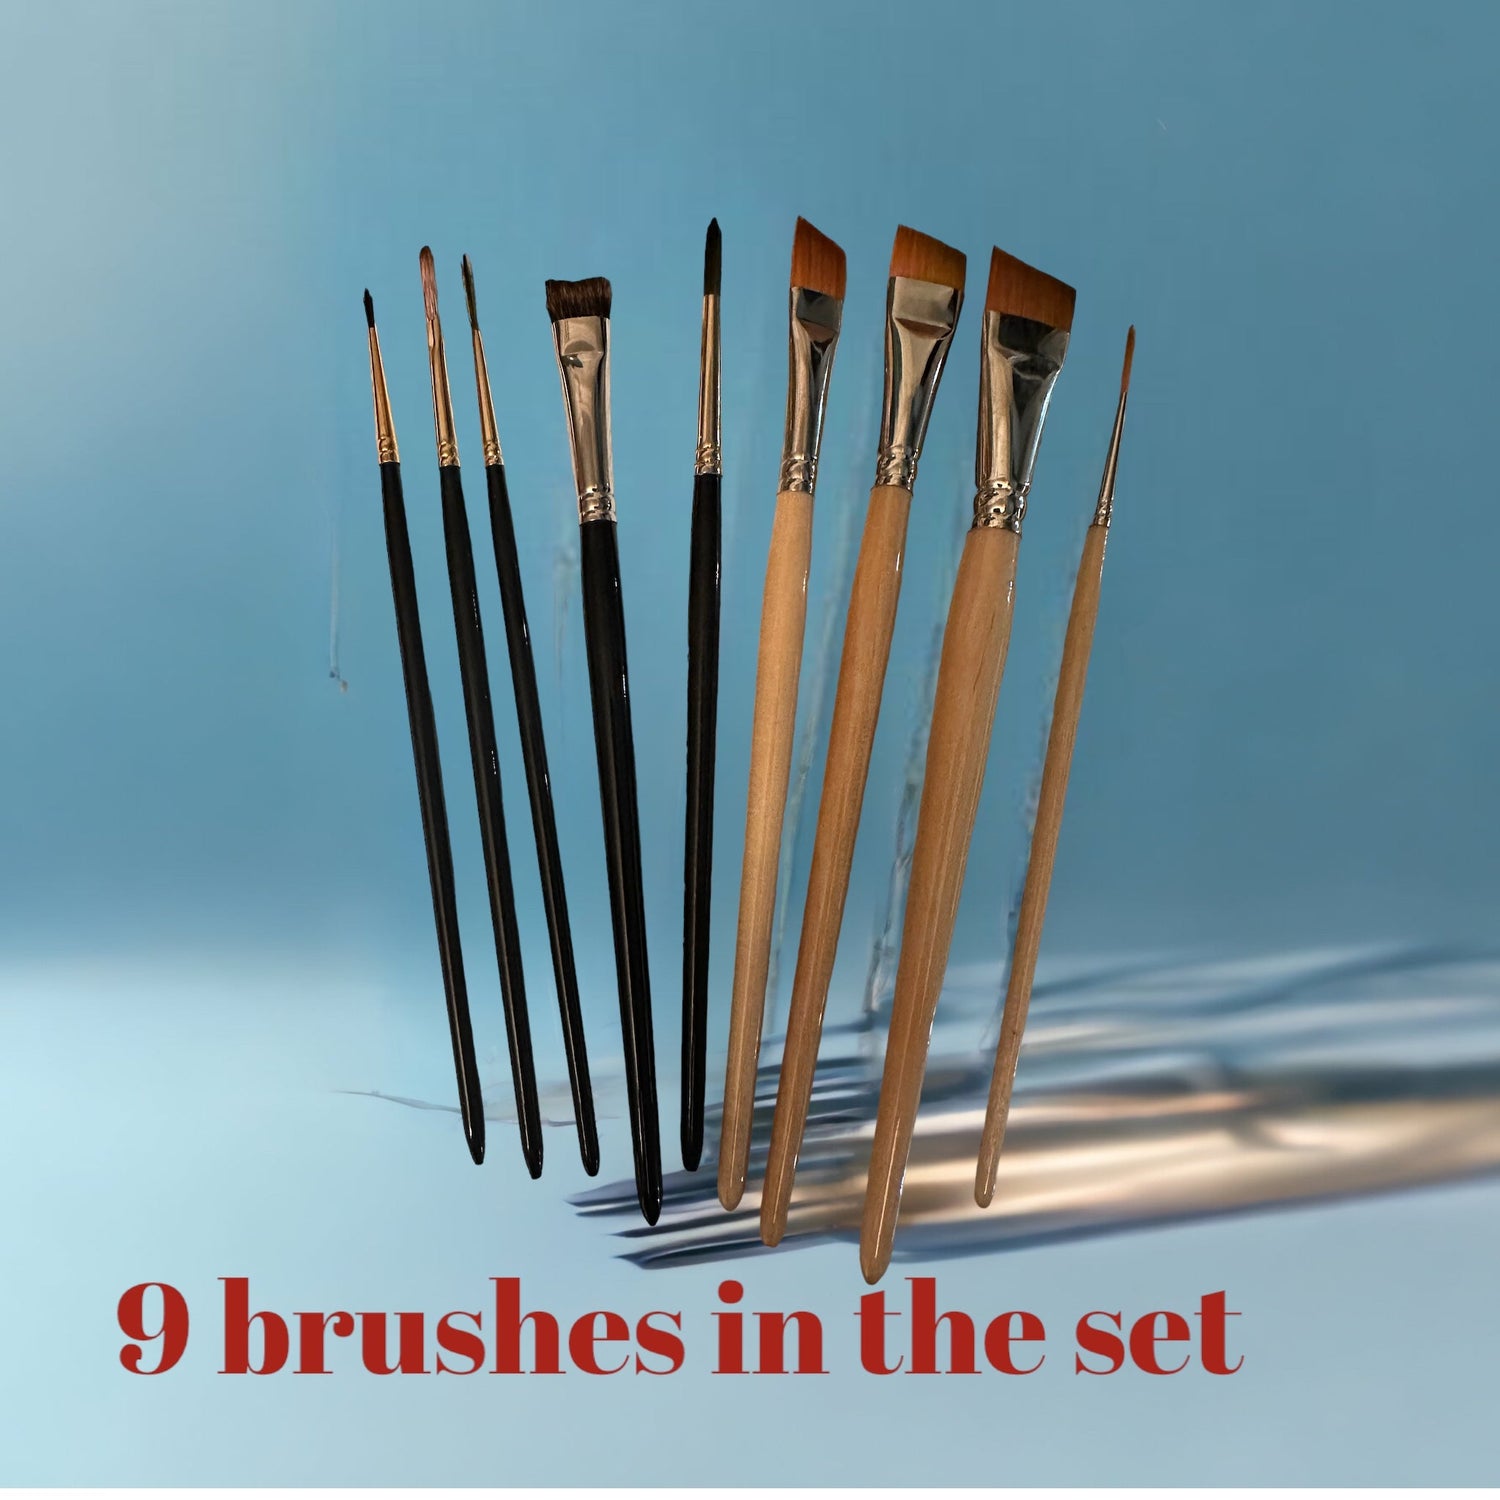 Face painting brushes, brushes, artist brushes, brush set, sallyannlynch